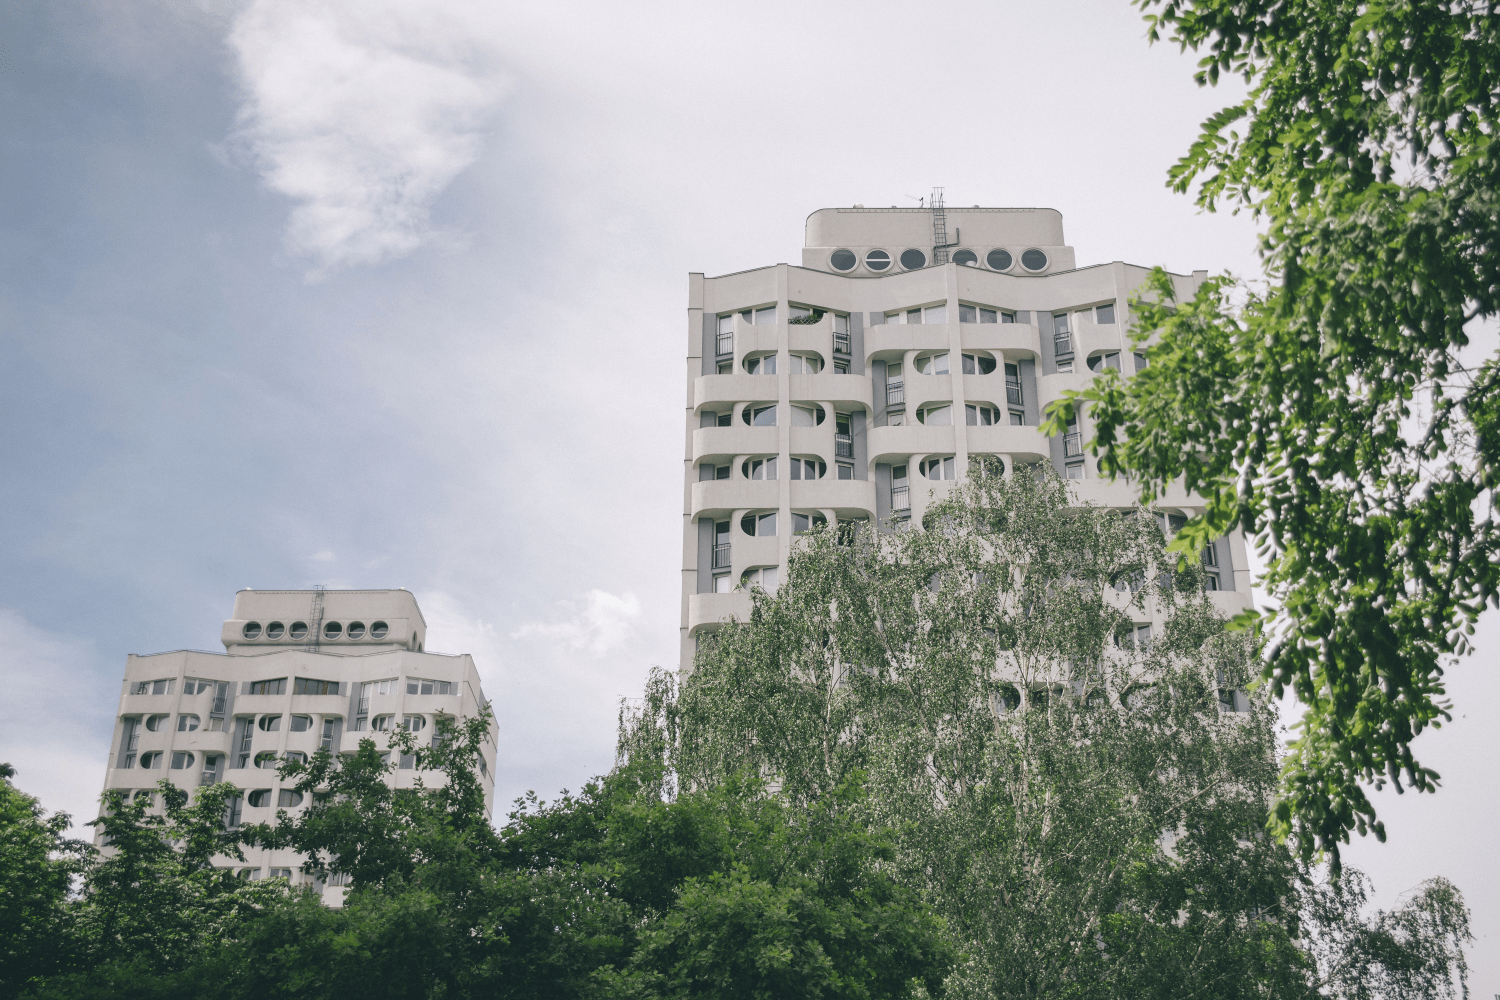 Poziome zdjęcie: widok na wrocłąwskie Sedesowce - białe wieżowce z charakterystycznymi okrągłymi oknami. Dolną część budynków na zdjęciu przesłąniają zielone korony drzew.